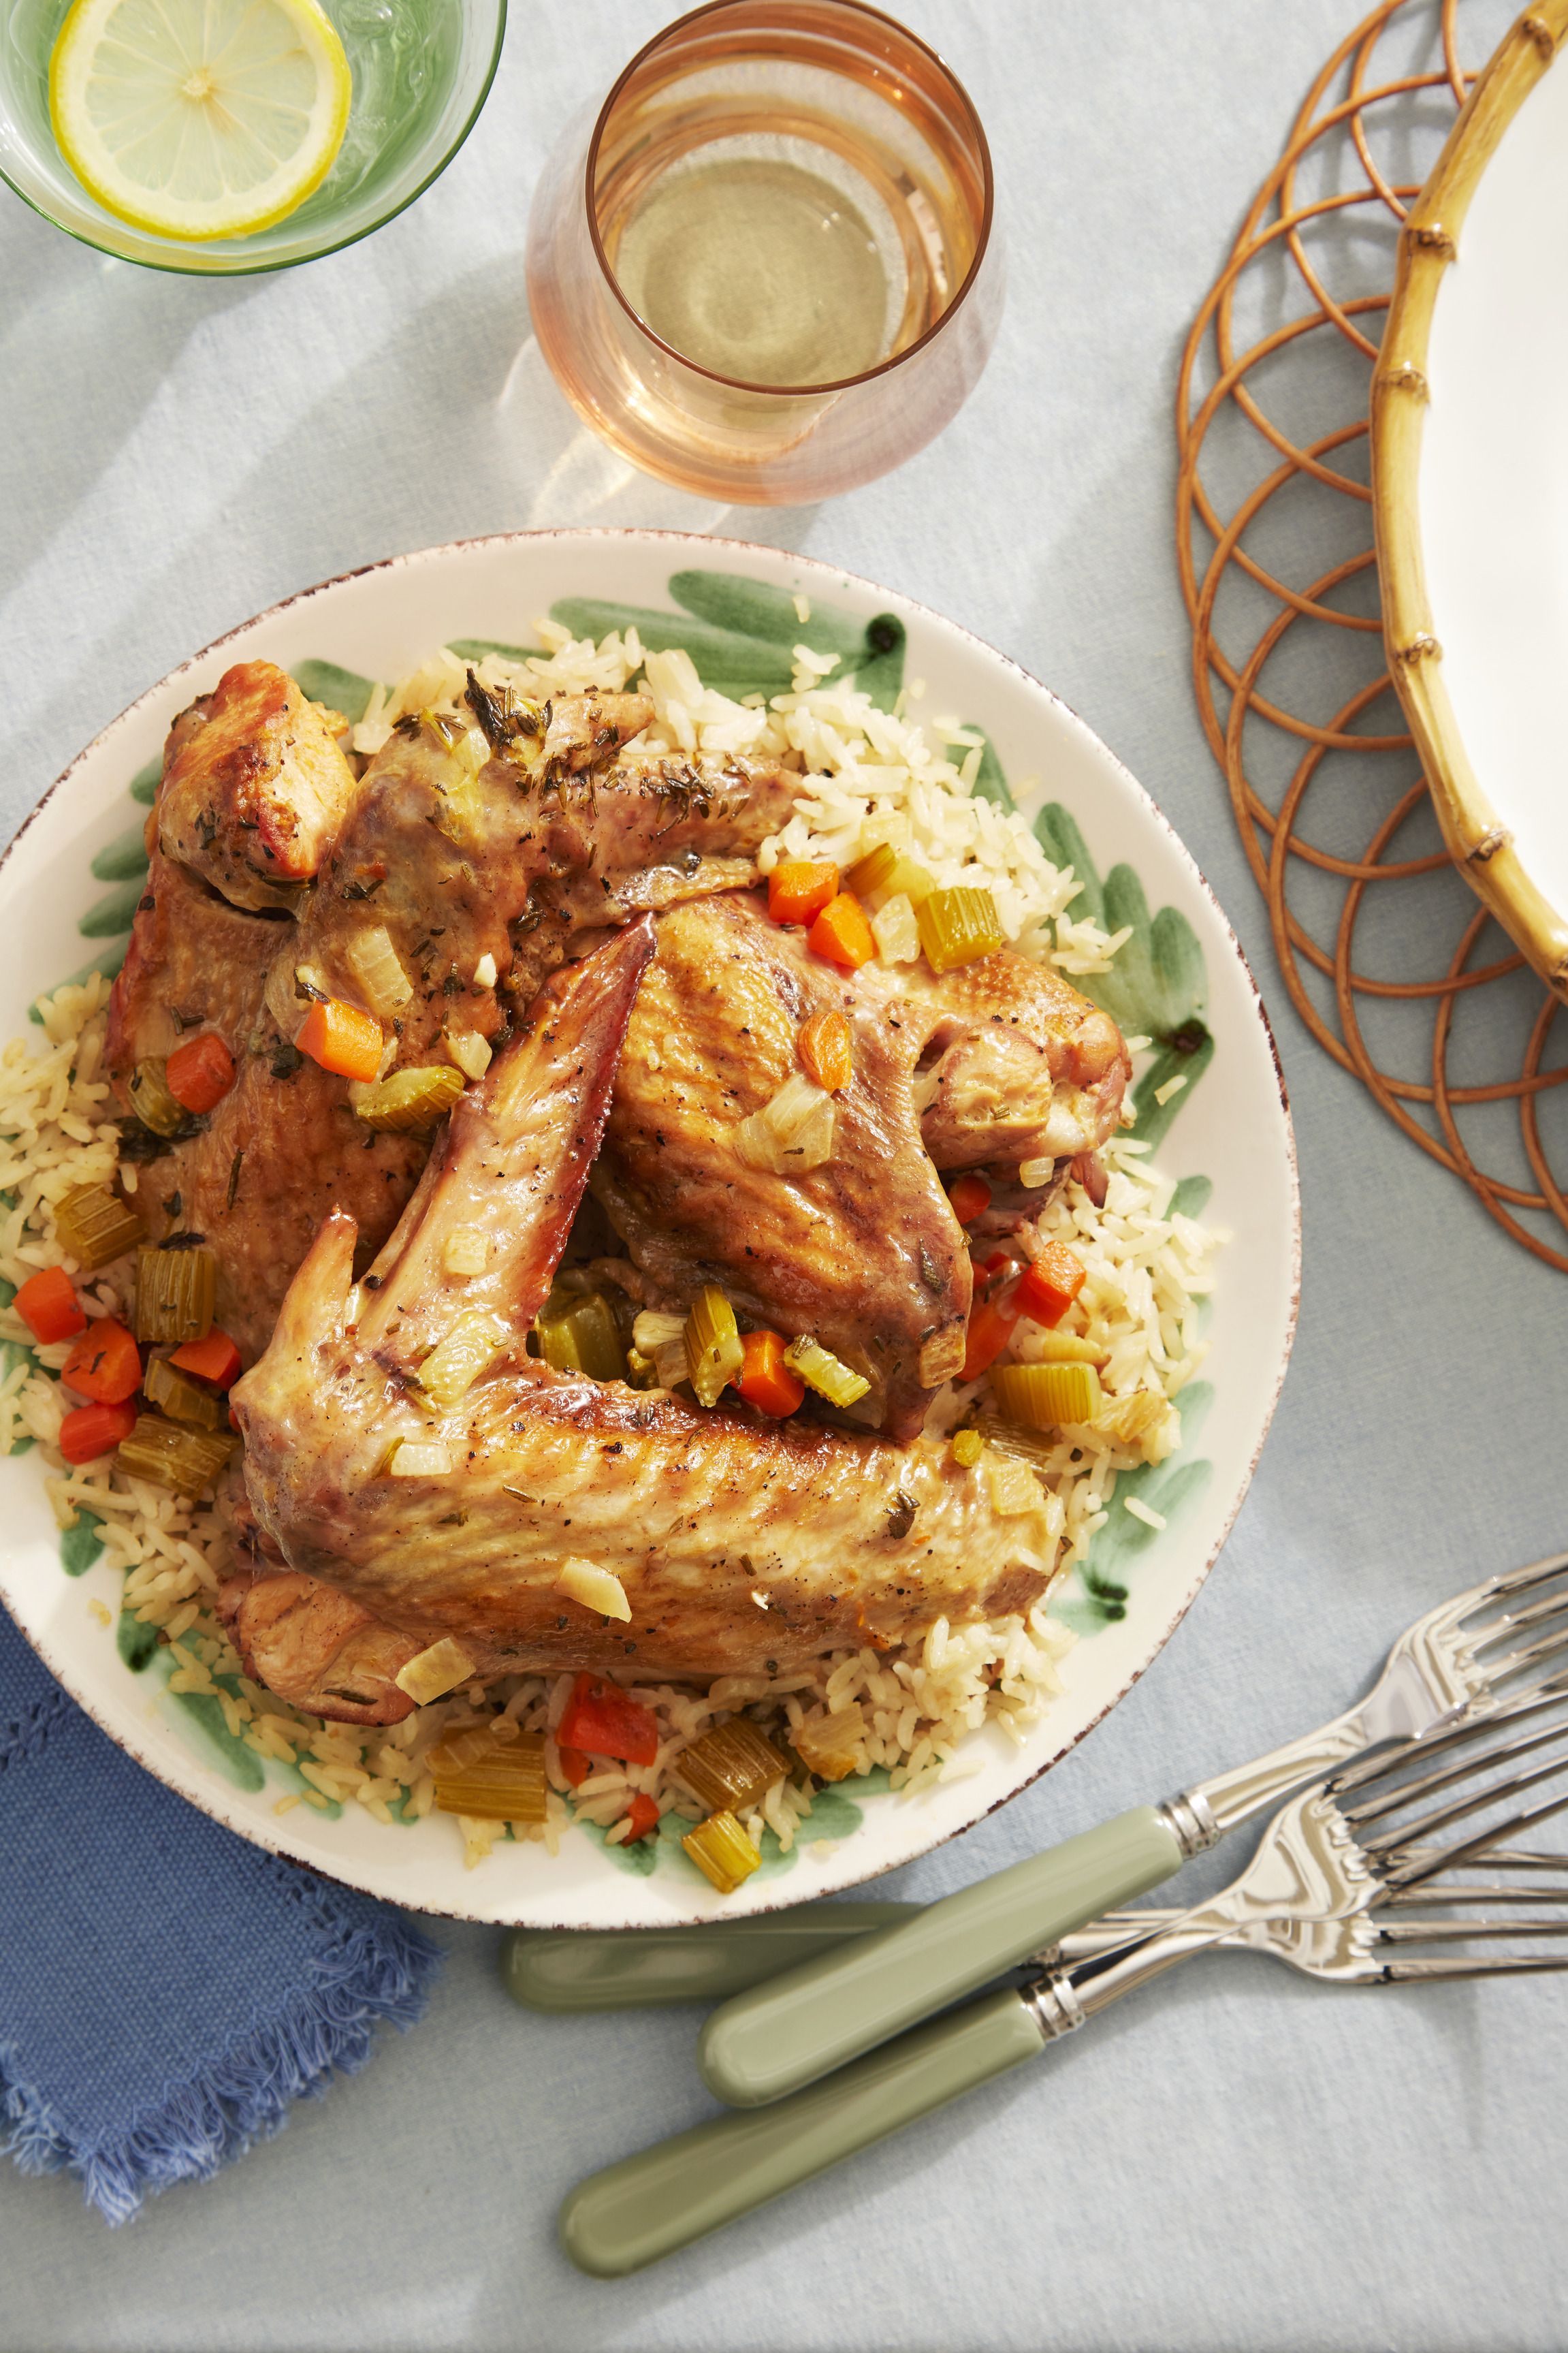 Warmdaddy's Braised Turkey Wings Recipe